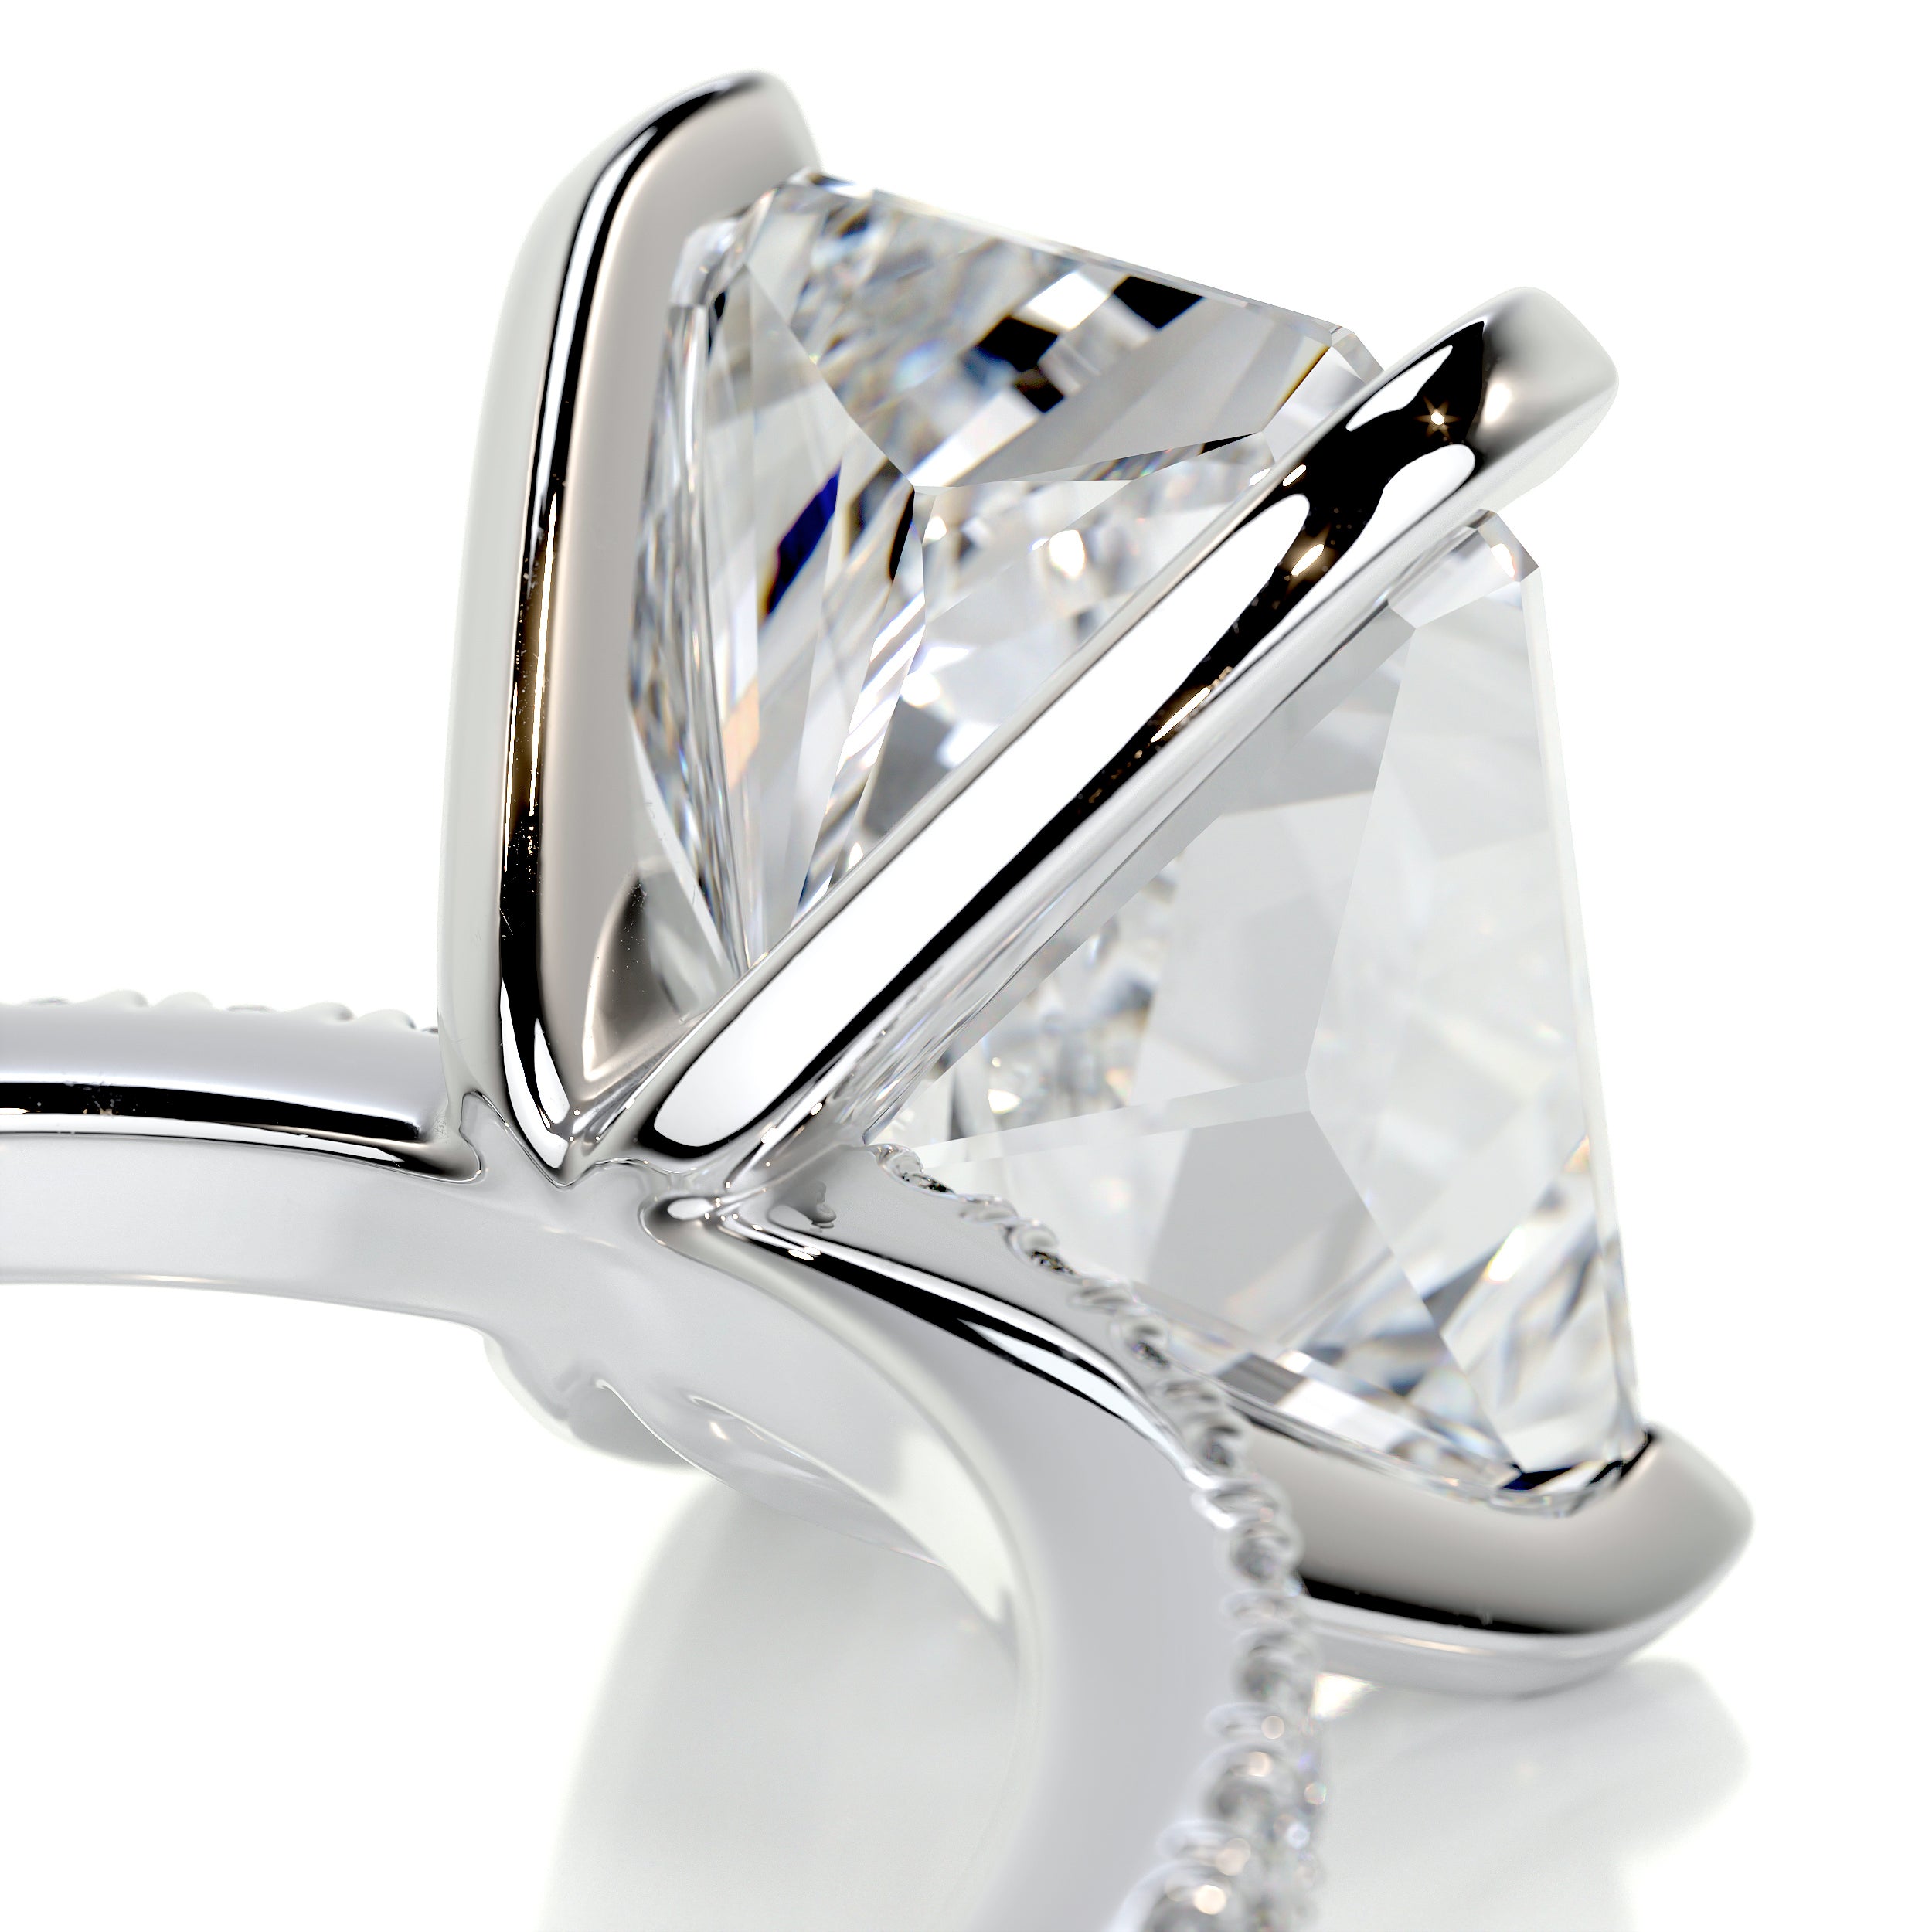 Audrey Diamond Engagement Ring   (3.5 Carat) -18K White Gold